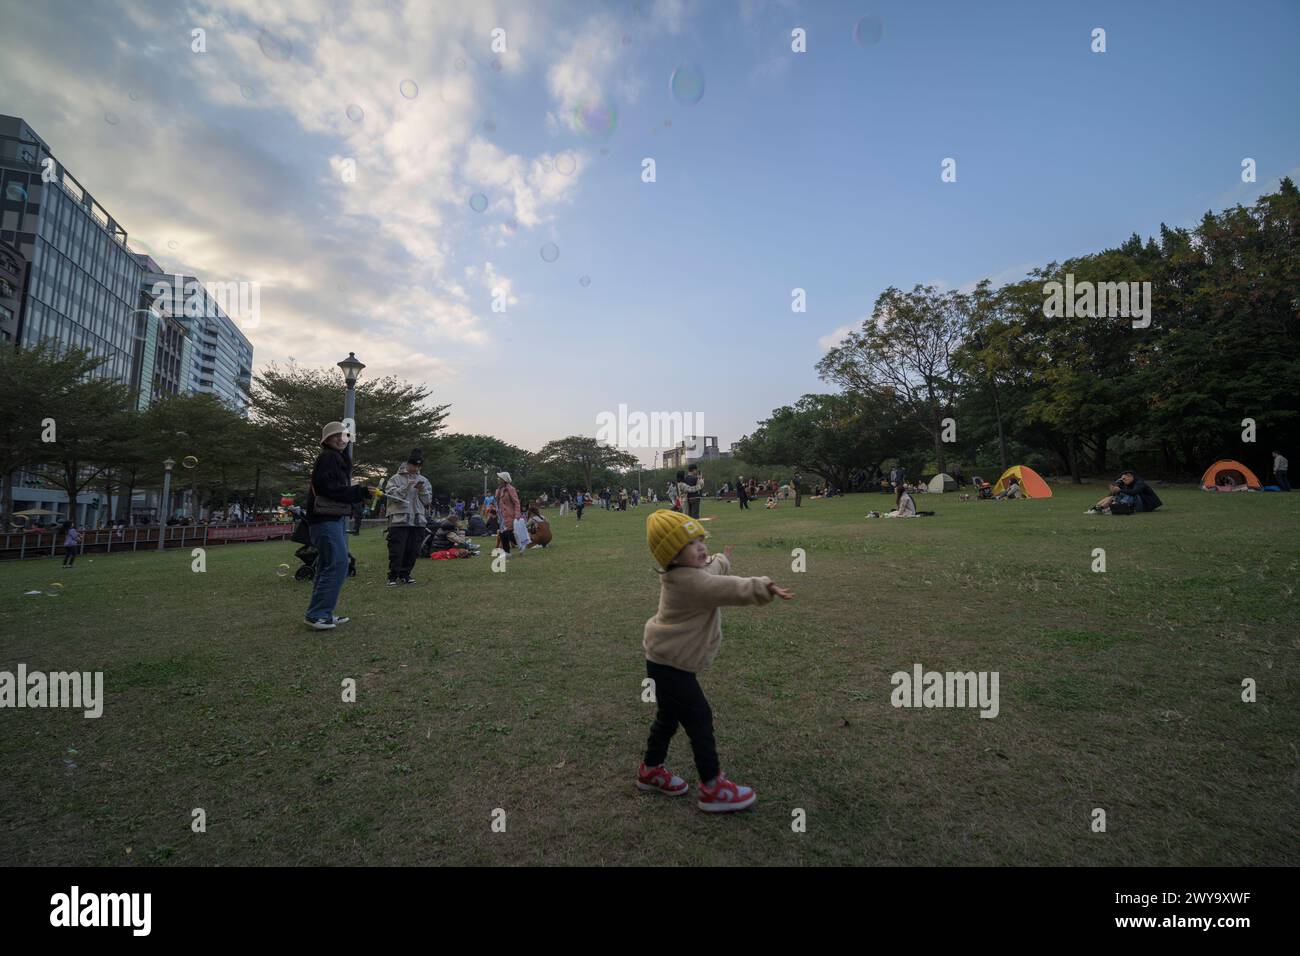 Eine fröhliche Szene, in der Kinder mit Seifenblasen spielen und Familien einen sonnigen Tag im Huashan Park genießen Stockfoto